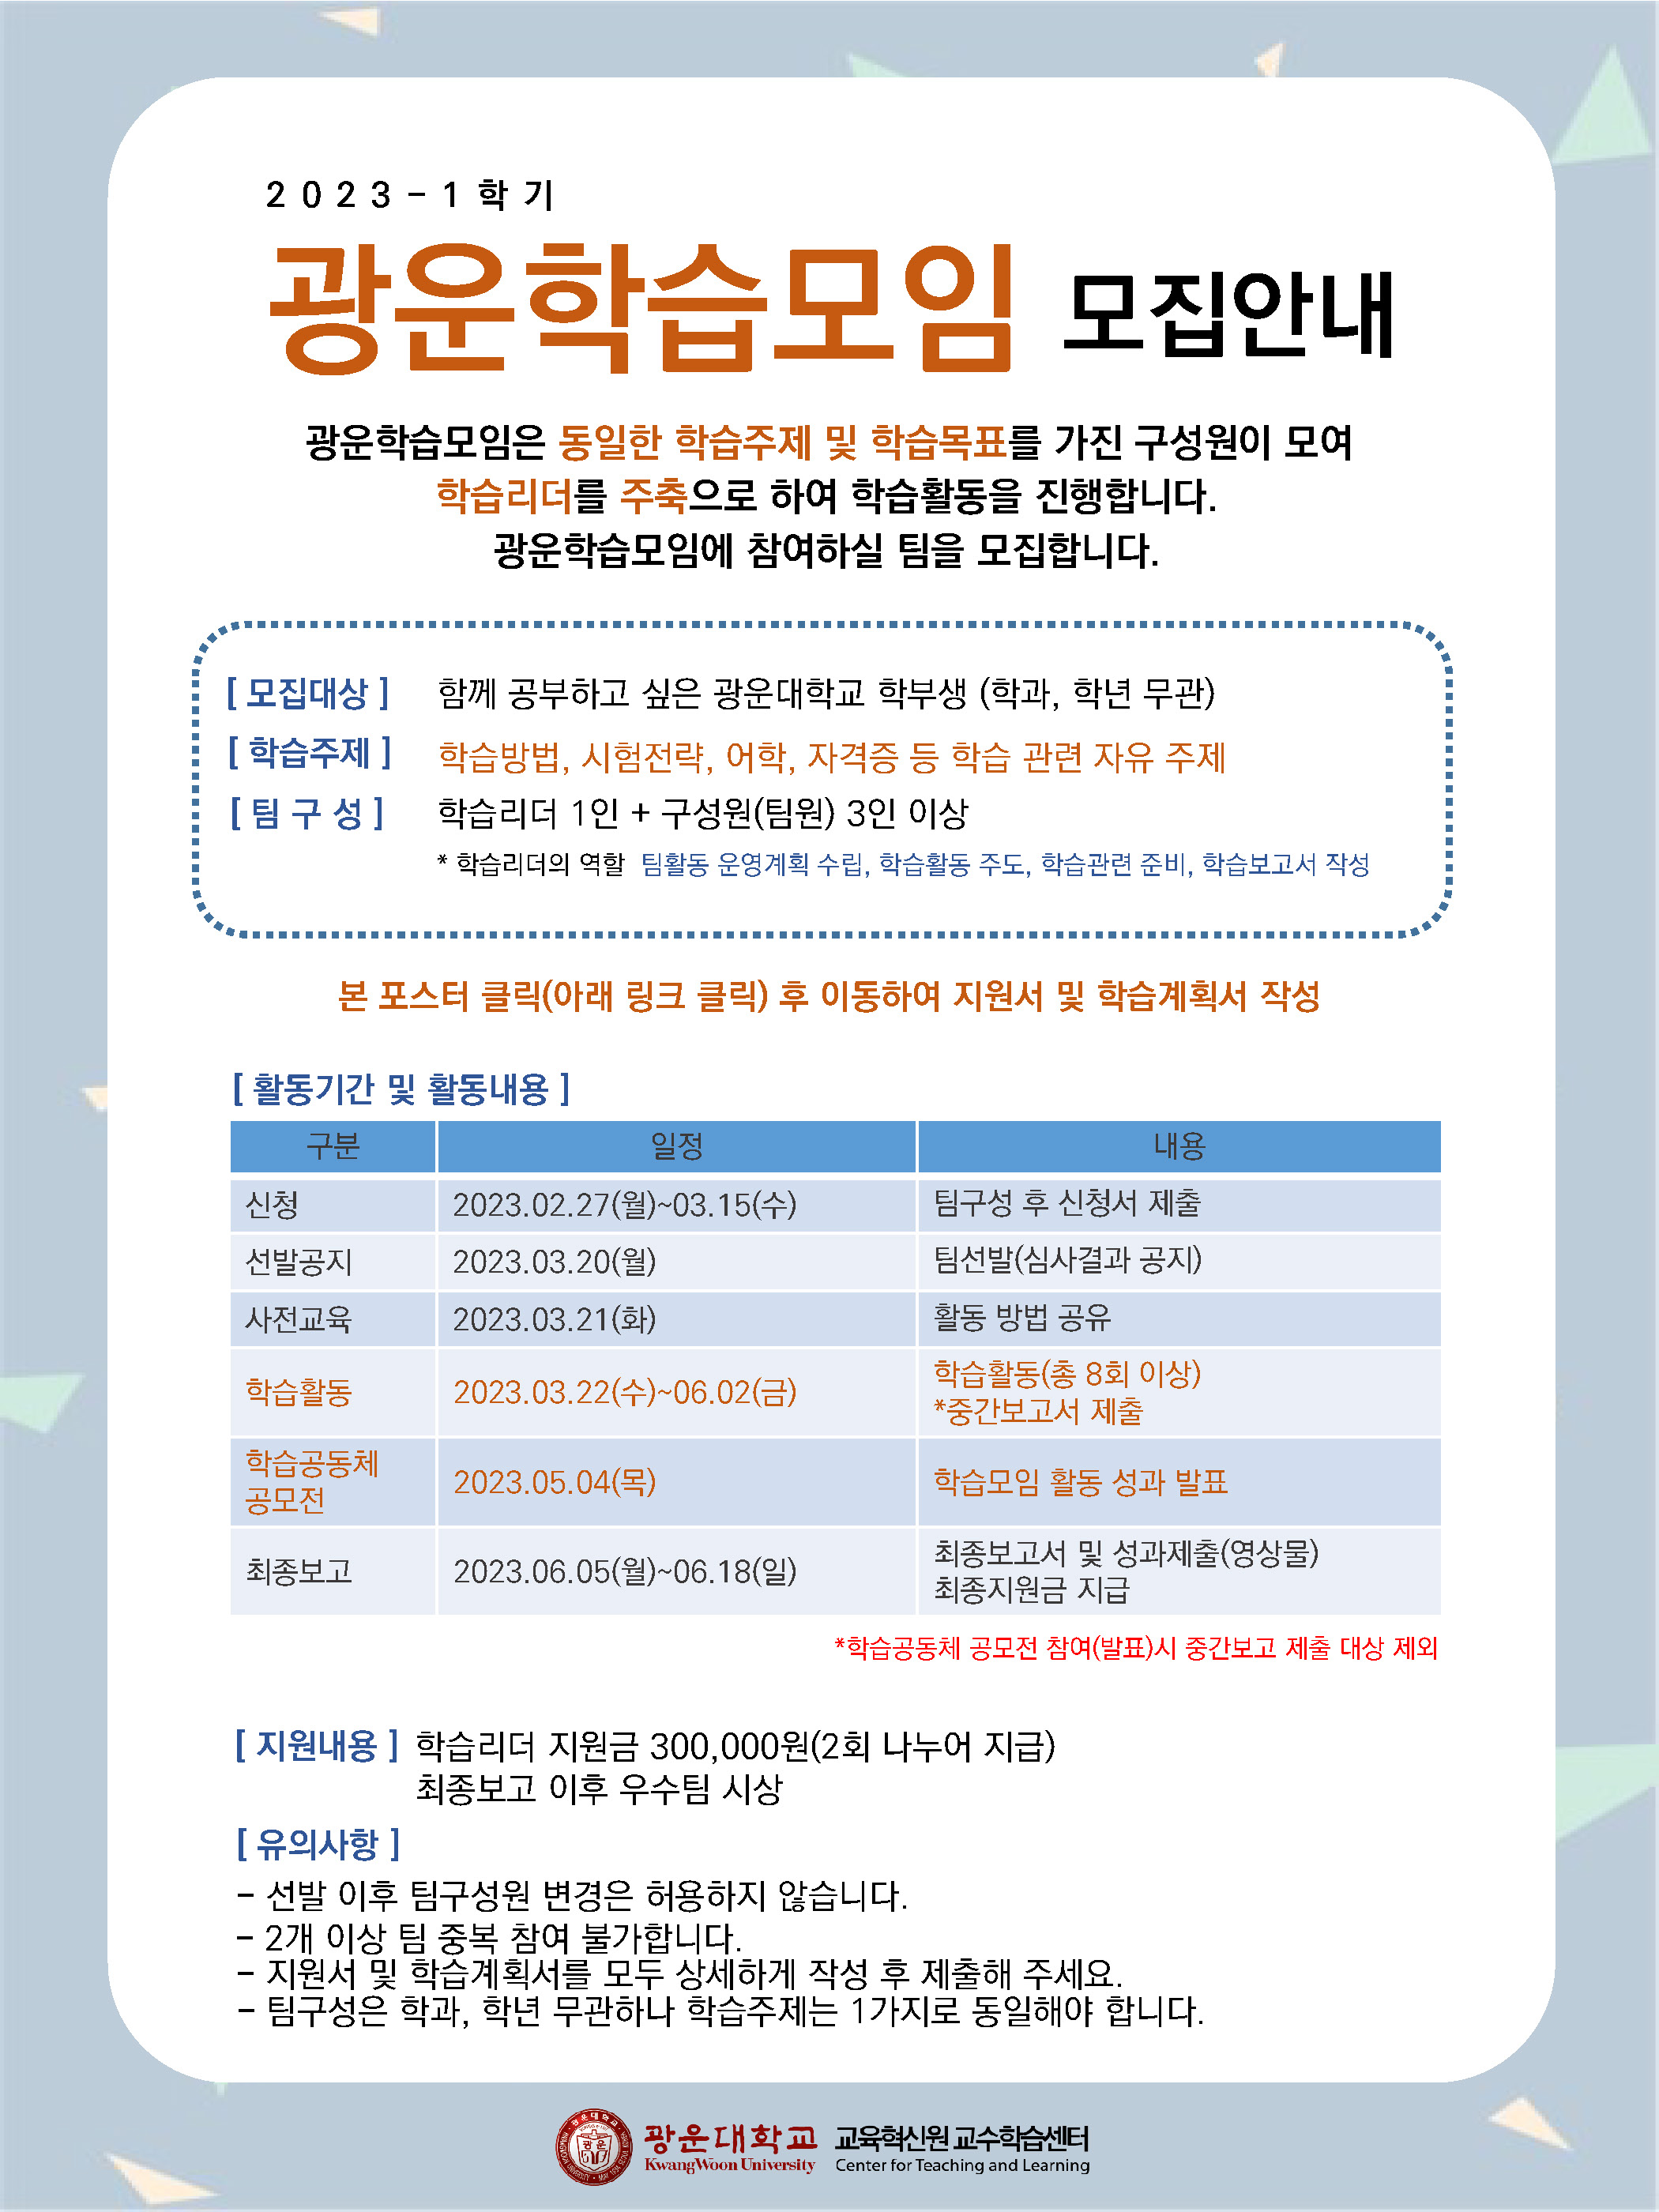 2023-1 광운학습모임 모집 안내